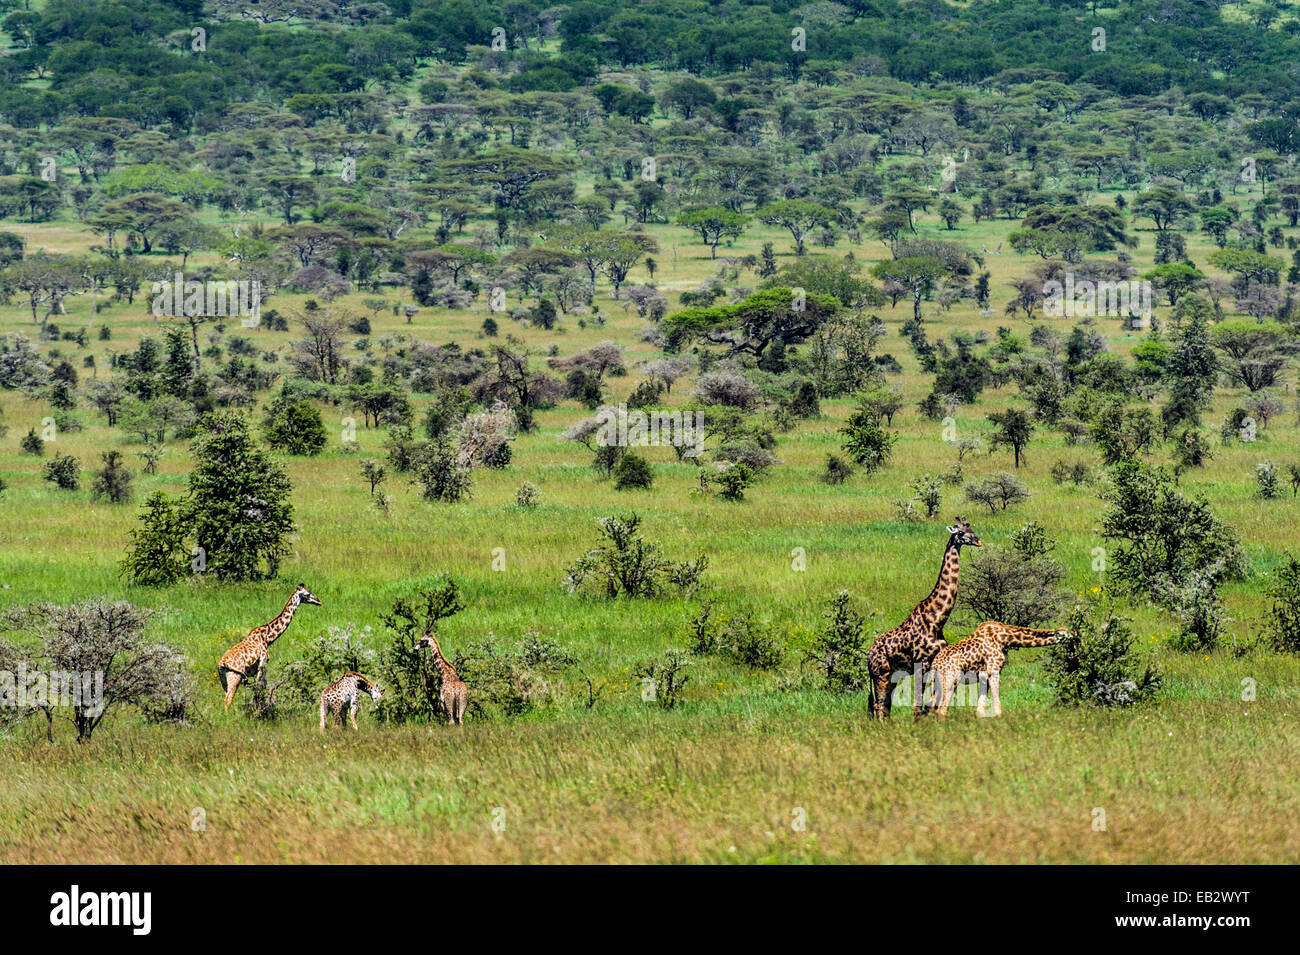 Una mandria di giraffe alimentazione su un open acacia woodland con un toro a seguito di una femmina del cervo in estro. Foto Stock